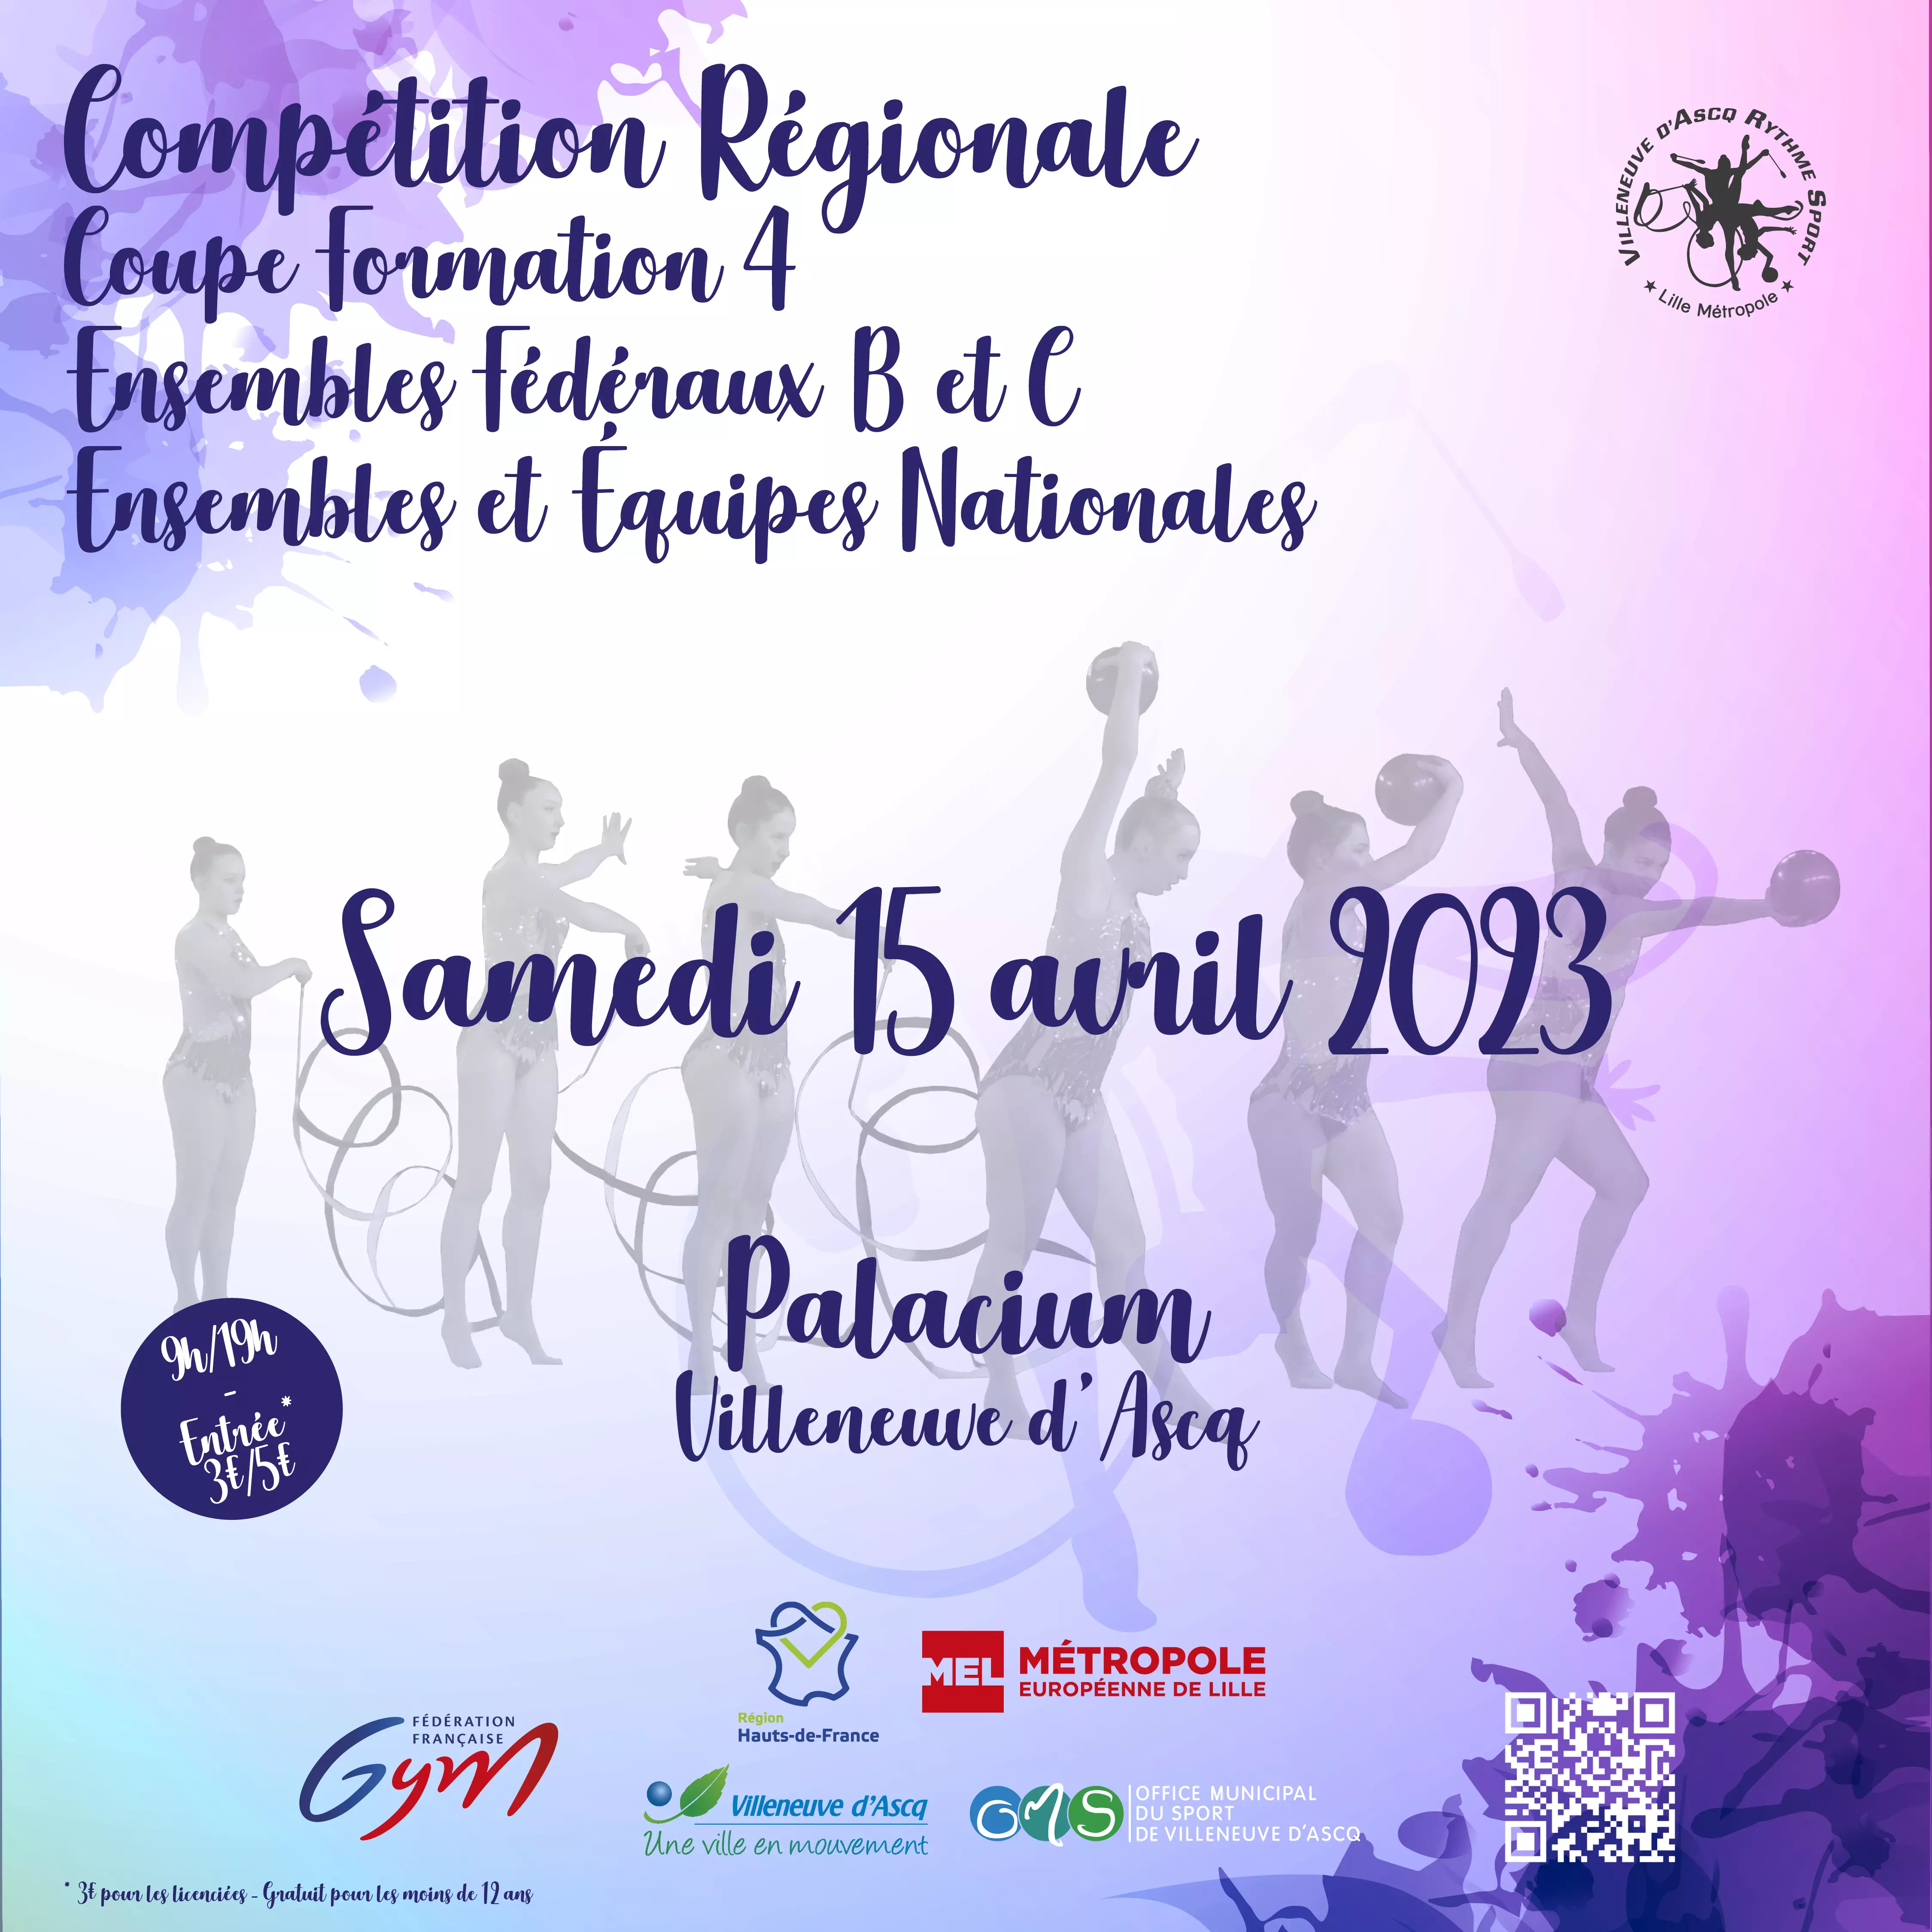 Compétitions Evènements Sportifs-Gymnastique : compétition régionale Ensembles fédéraux et équipes nationales